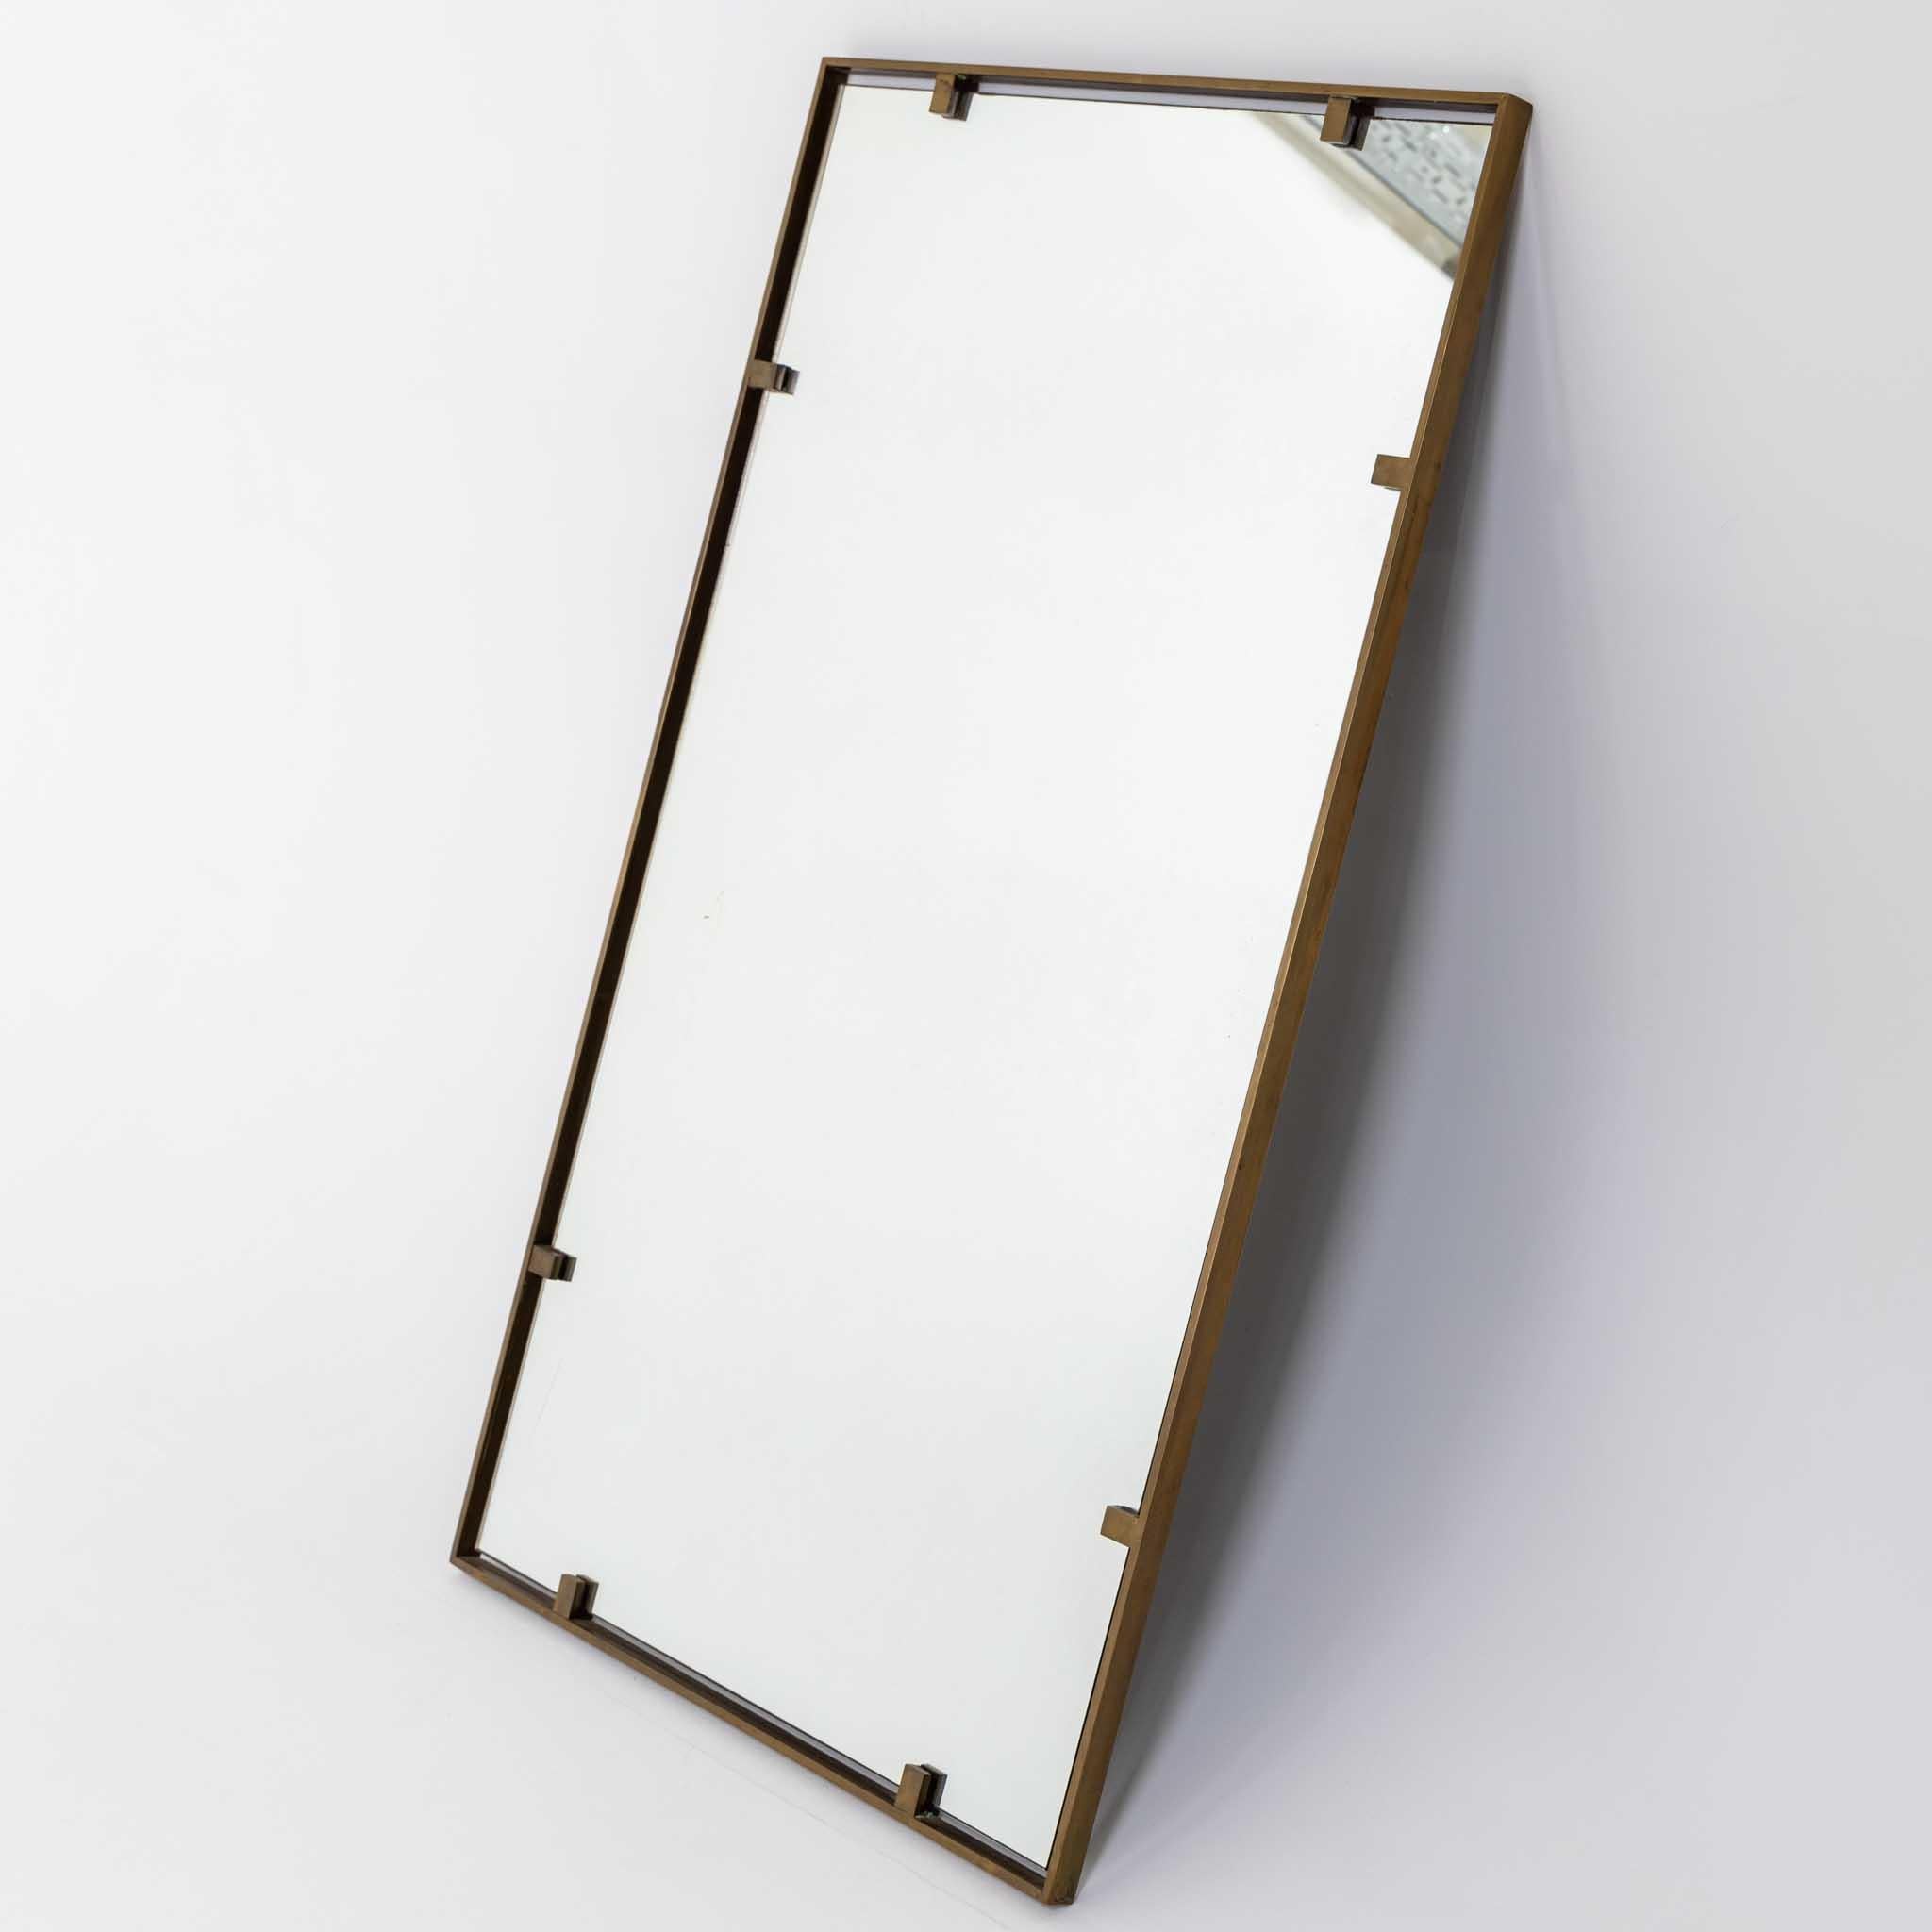 Dekorativer rechteckiger Spiegel im italienischen Modernismus.

Massiver patinierter Messingrahmen mit originalem Spiegelglas. 

Der Spiegel wird mit Klammern befestigt, um einen schwebenden Effekt zu erzielen.